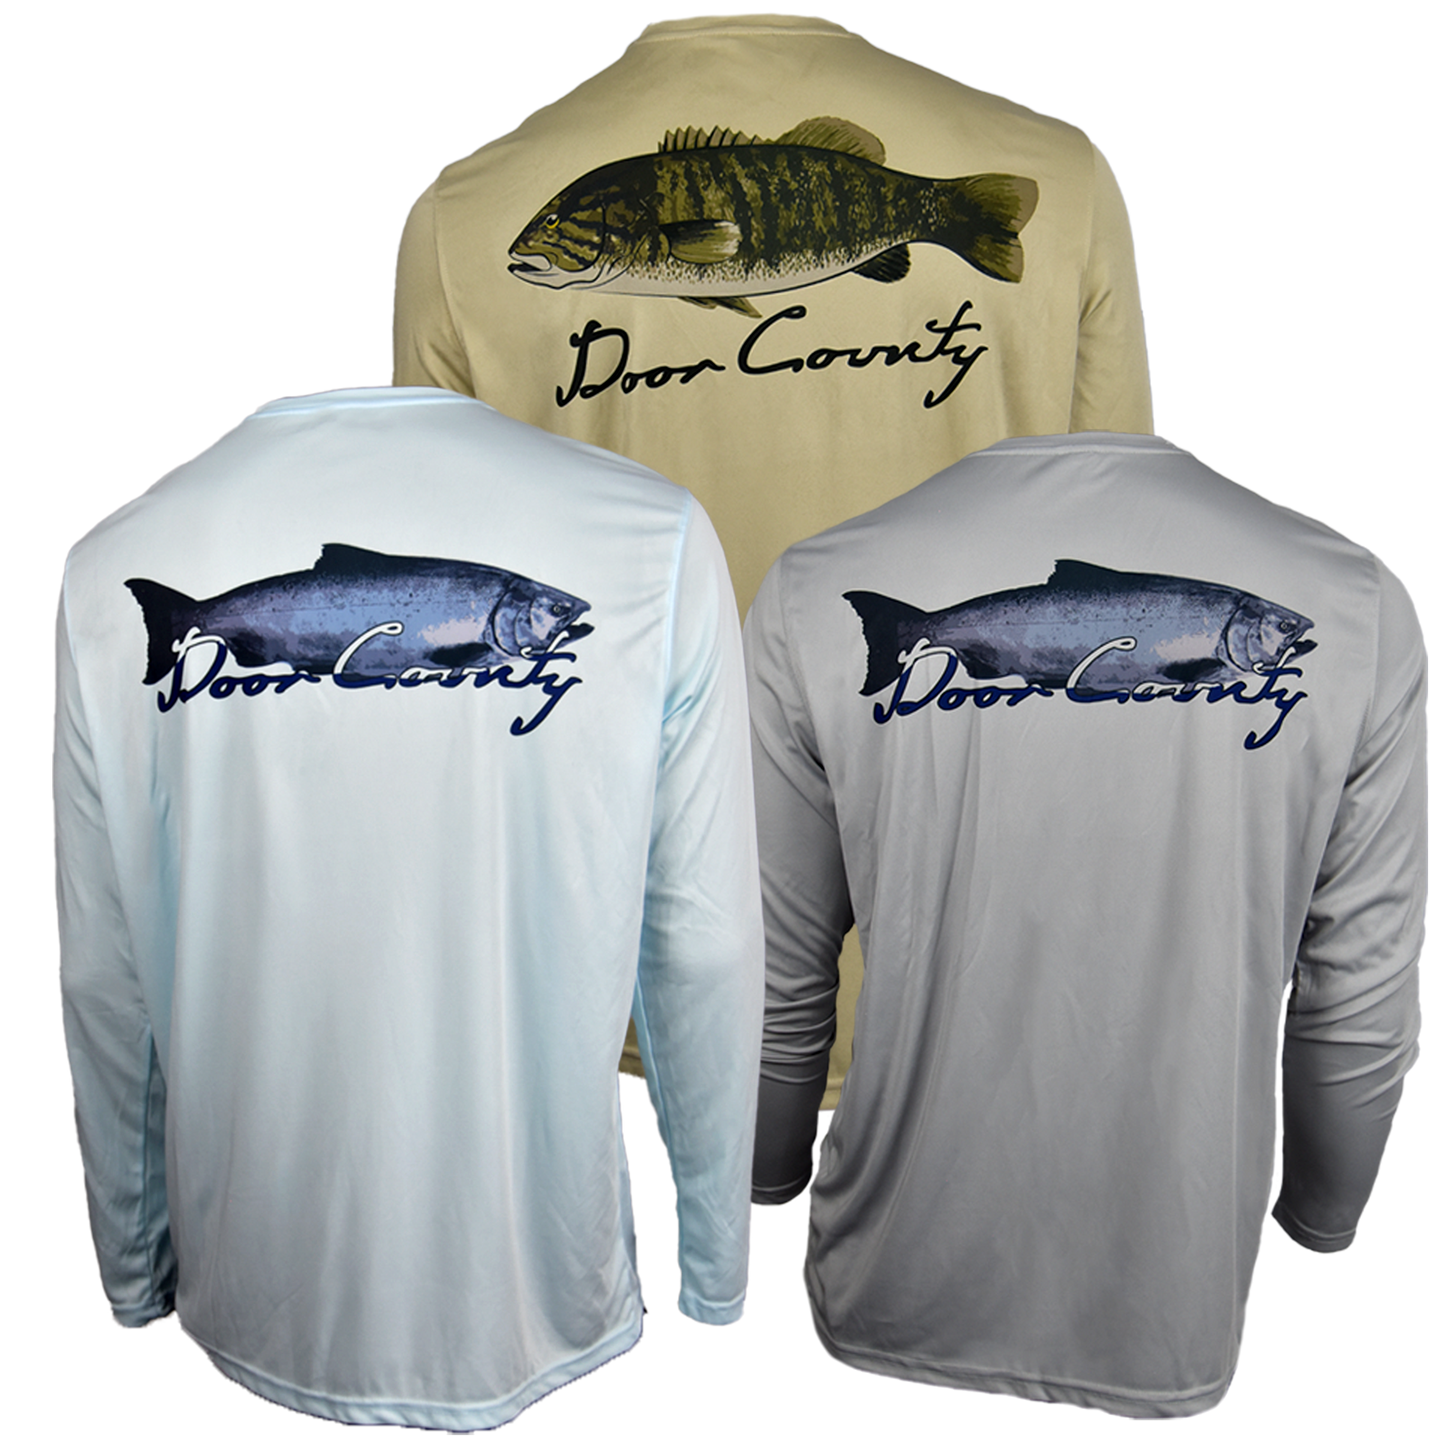 Solar Long Sleeve Fishing Shirts